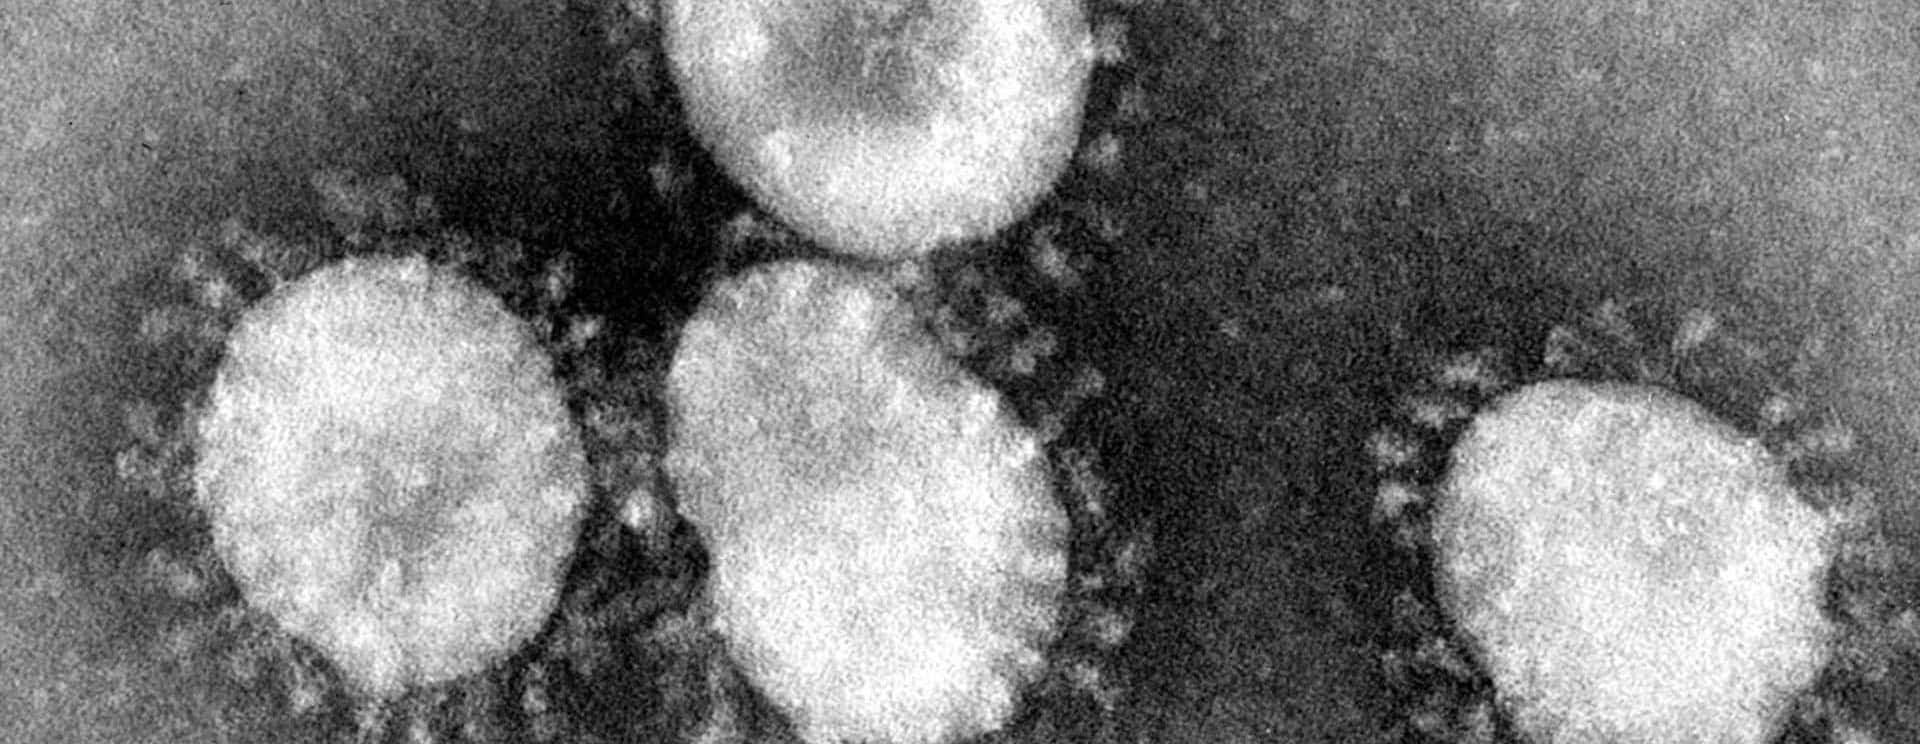 coronaviruses-jpg-32